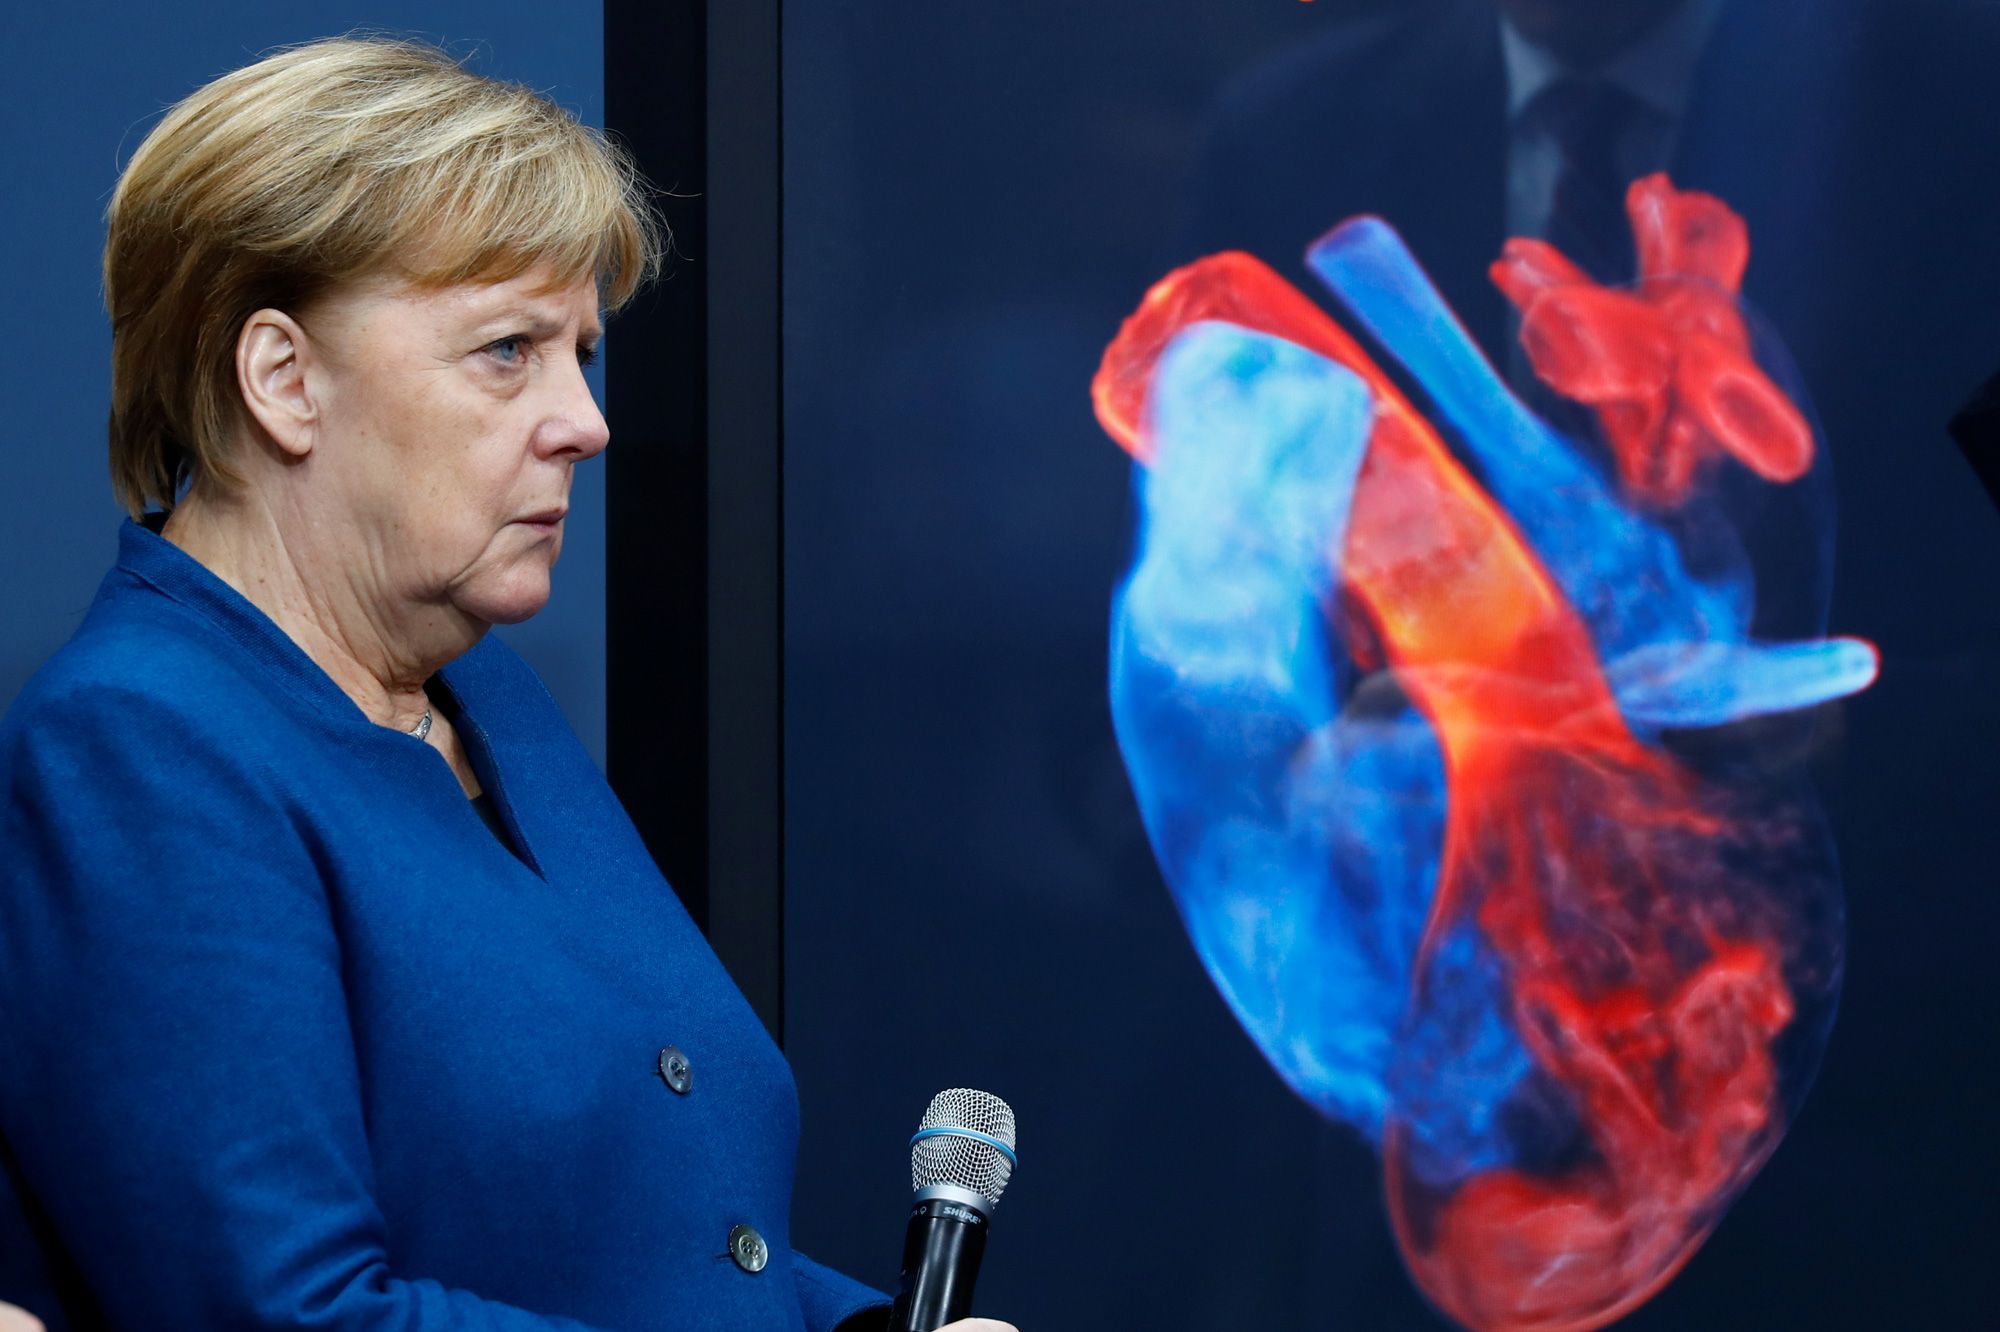 ALLEMAGNE: Merkel condamne une "alliance impardonnable" avec l’extrême droite et provoque une élection anticipée